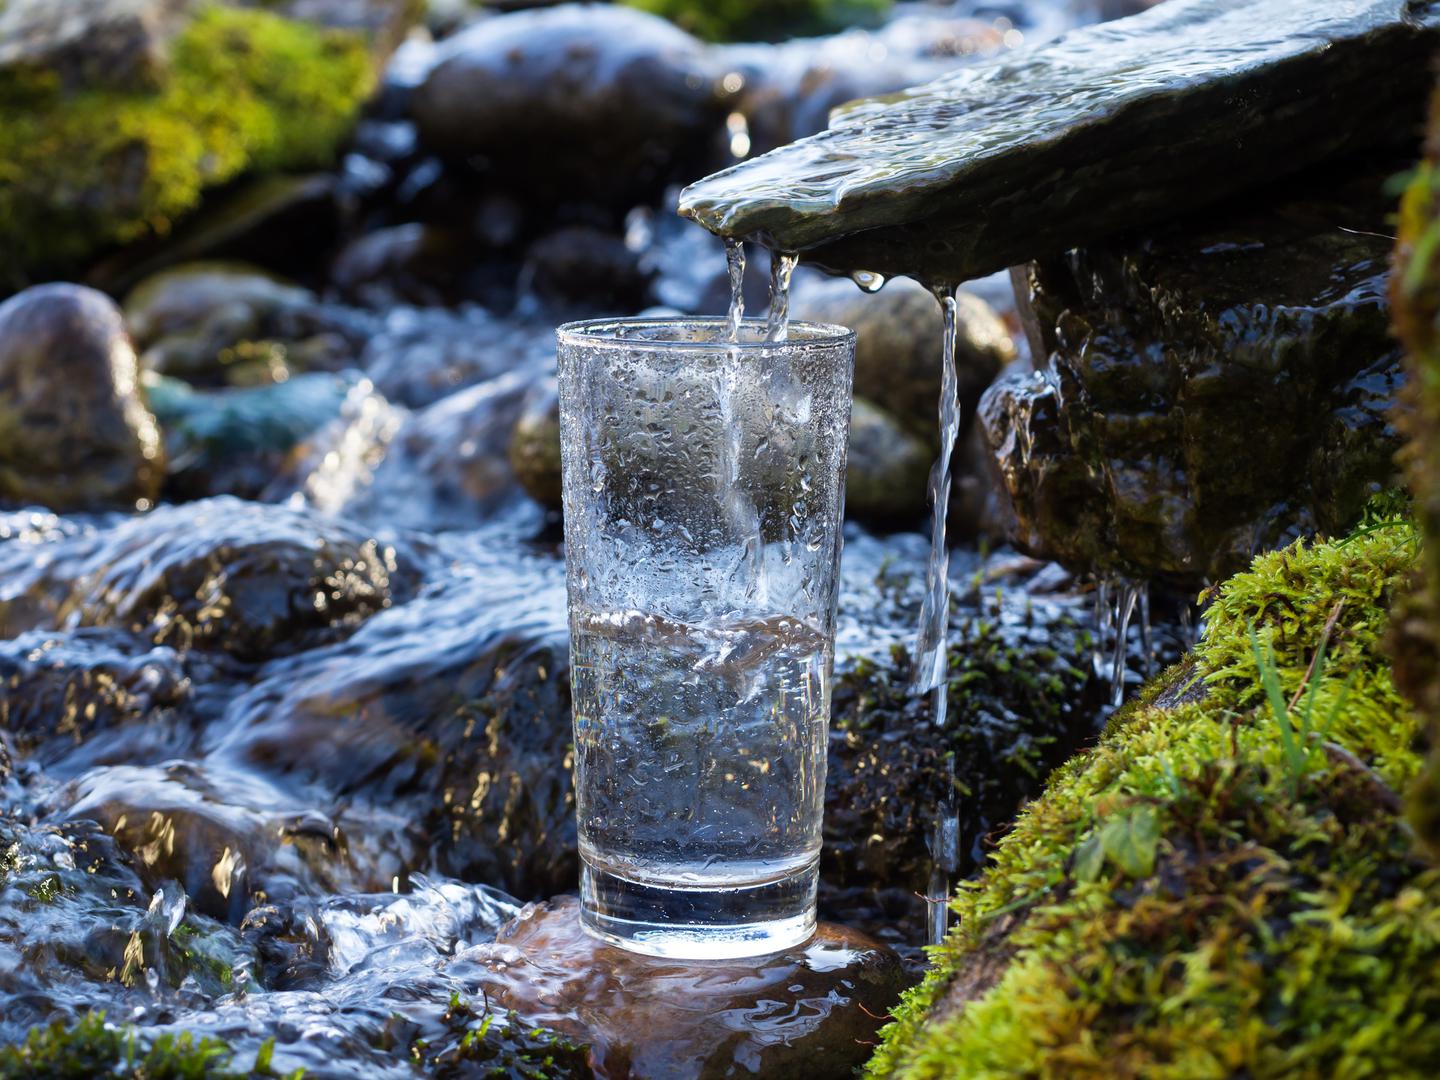 U Americi je sve veći trend prodavati prirodnu izvorsku vodu koja nije prošla nikakve procese obrade, što kod nas nije neobično jer u mnogim selima stanovnici piju vodu iz bunara.